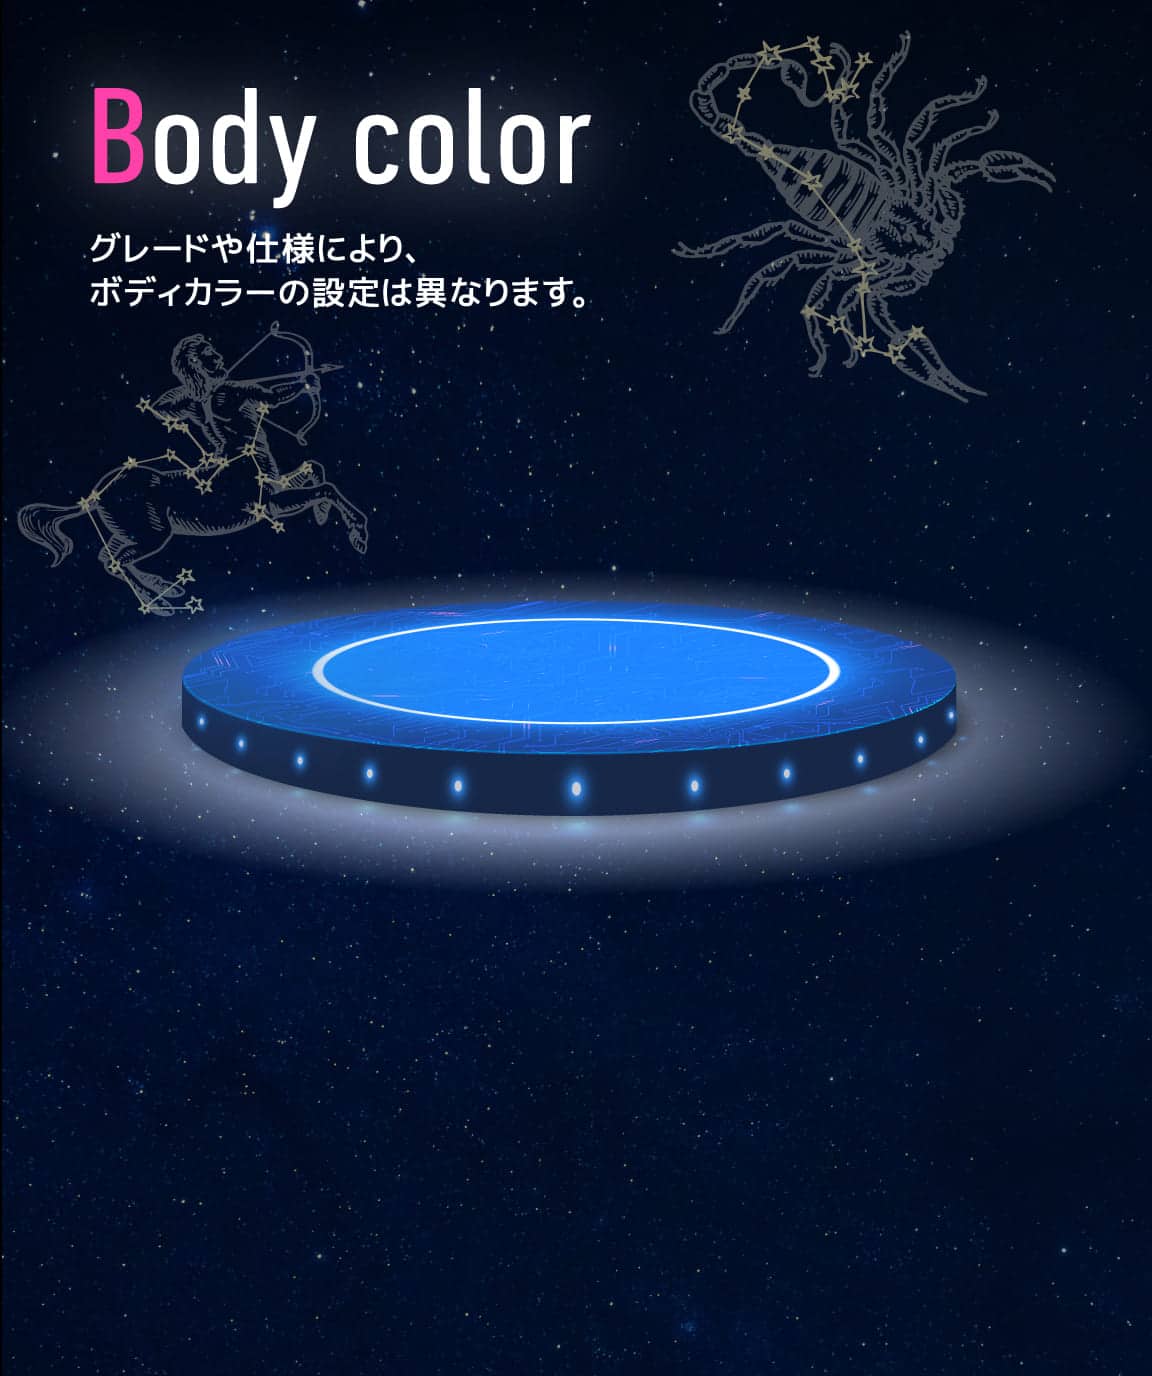 Body color